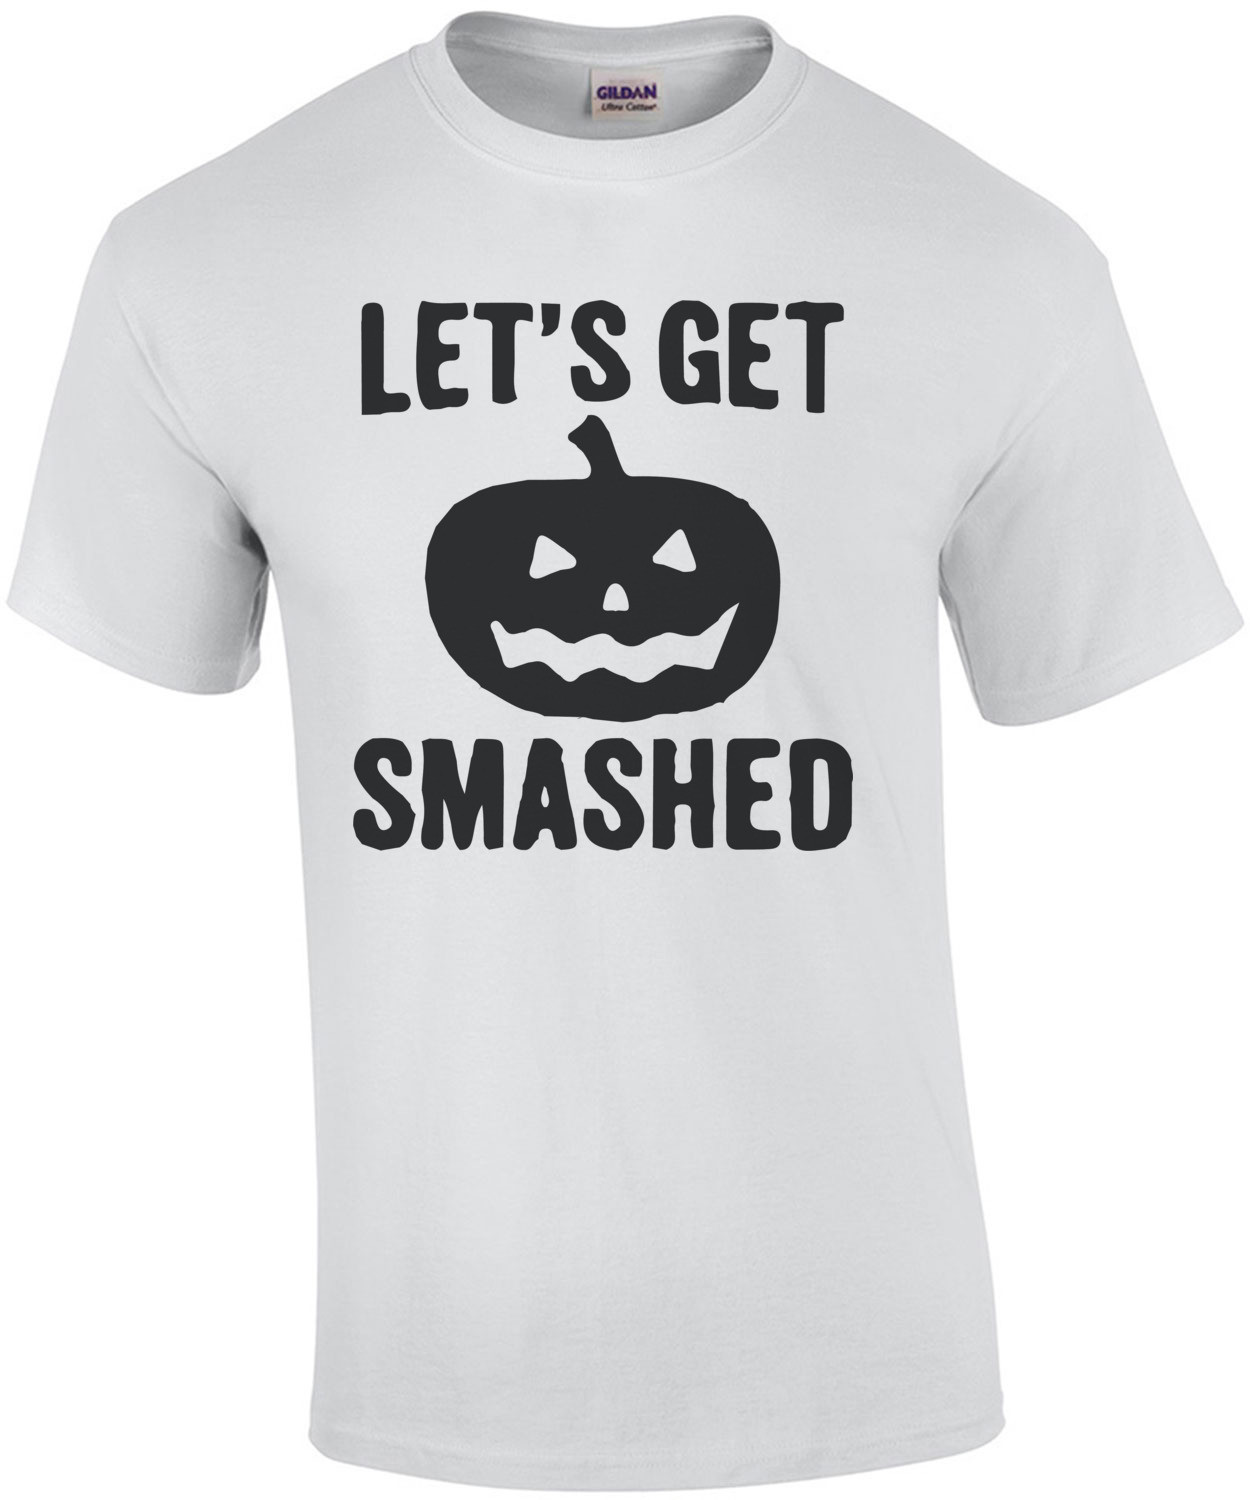 Let's get smashed - halloween pumkin